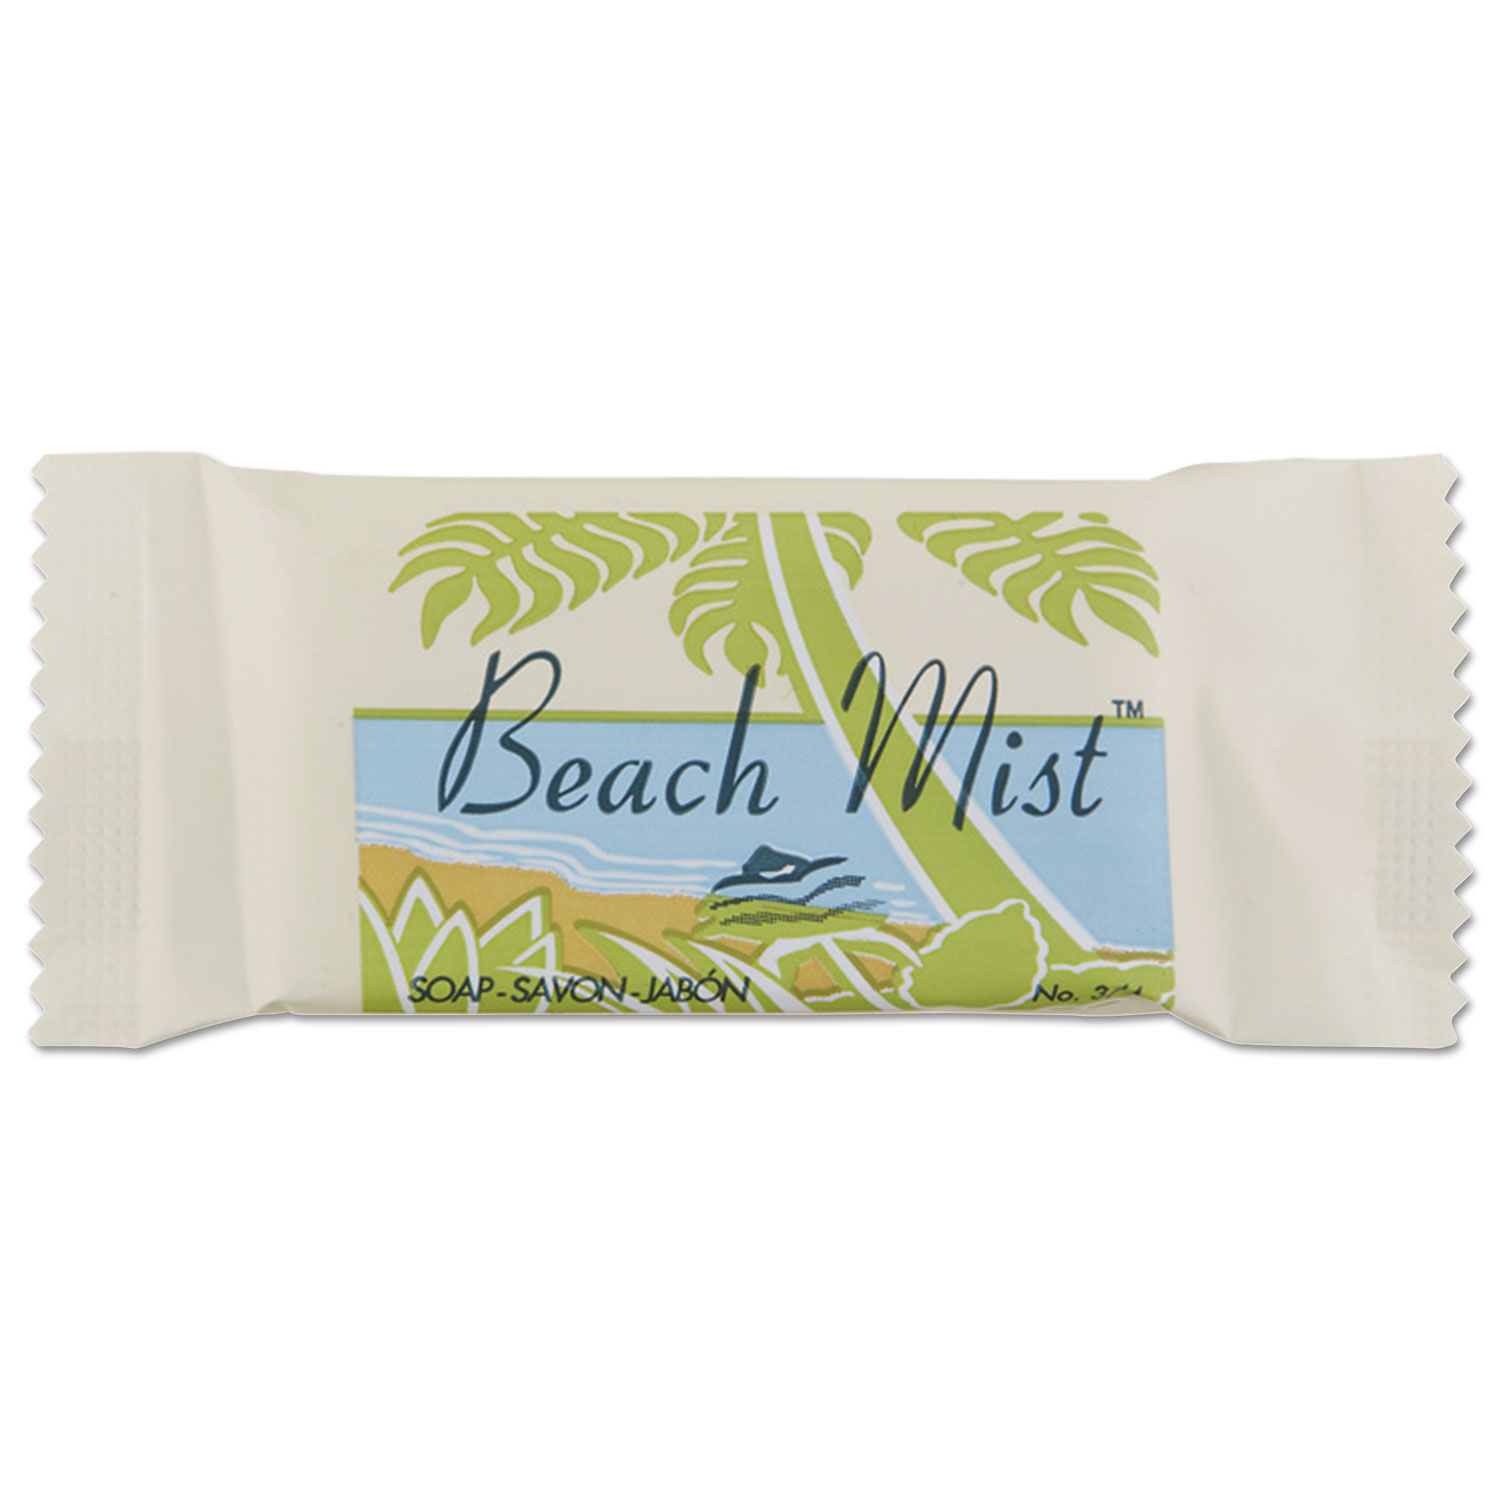  Beach Mist NO3.4 Face and Body Soap, Beach Mist Fragrance, # 3/4 Bar, 1000/Carton (BHMNO34A) 